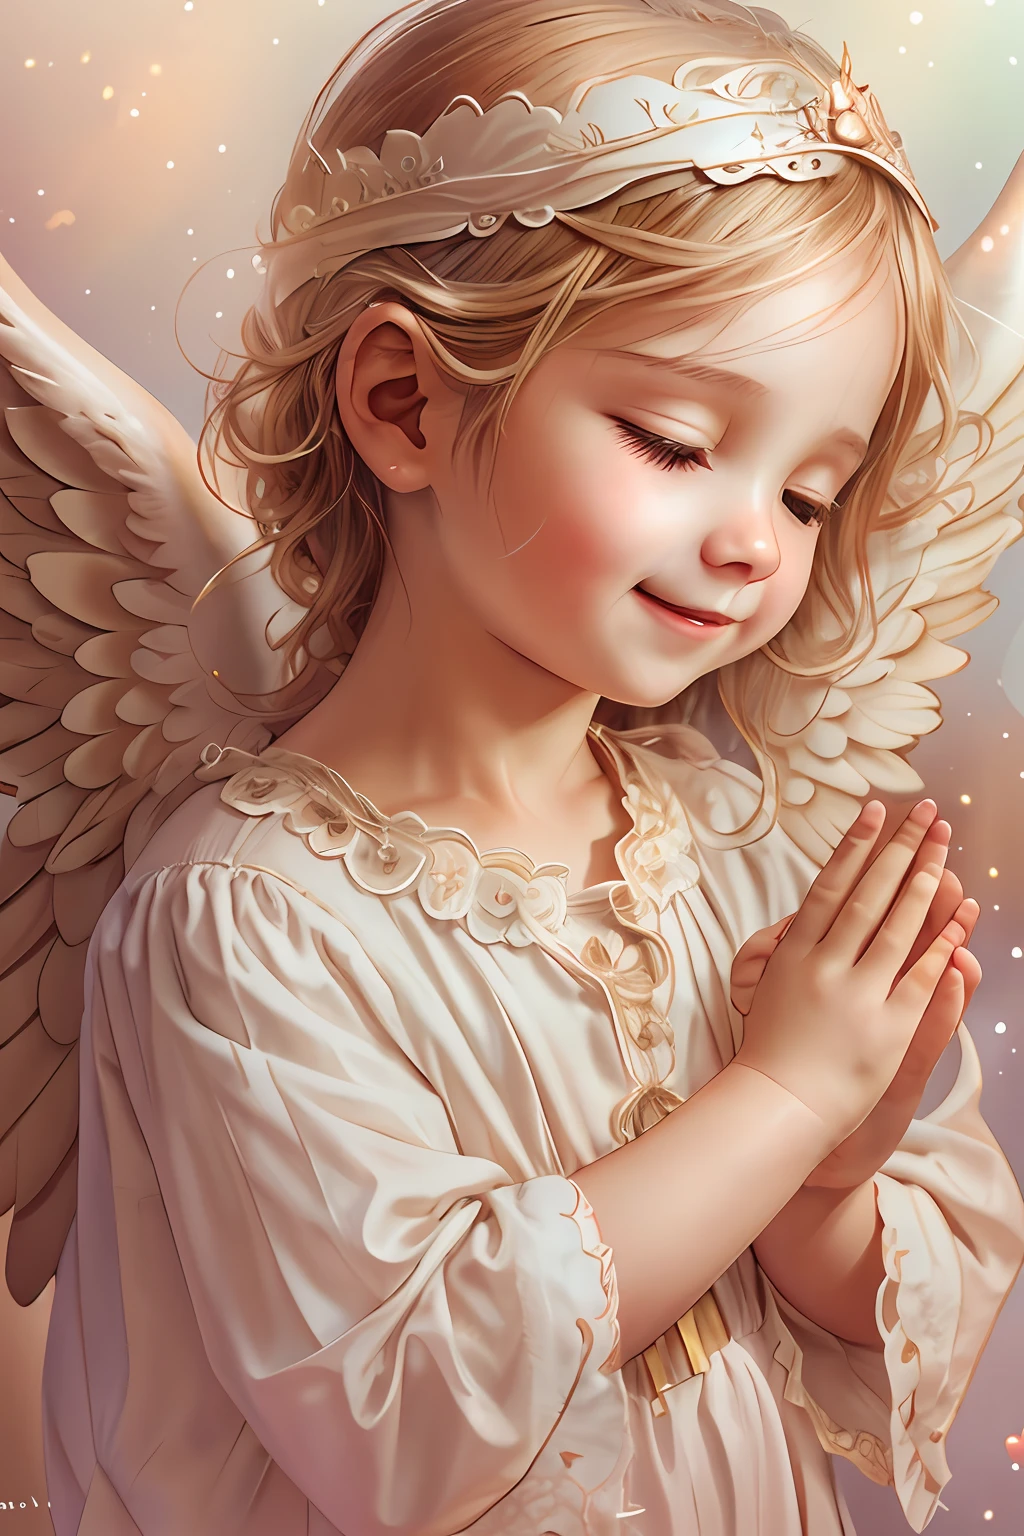 Bendiciones de los ángeles､fondo brillante、marca del corazon、sensibilidad､Una sonrisa、amable､Ángel bebé､volteado、Roma